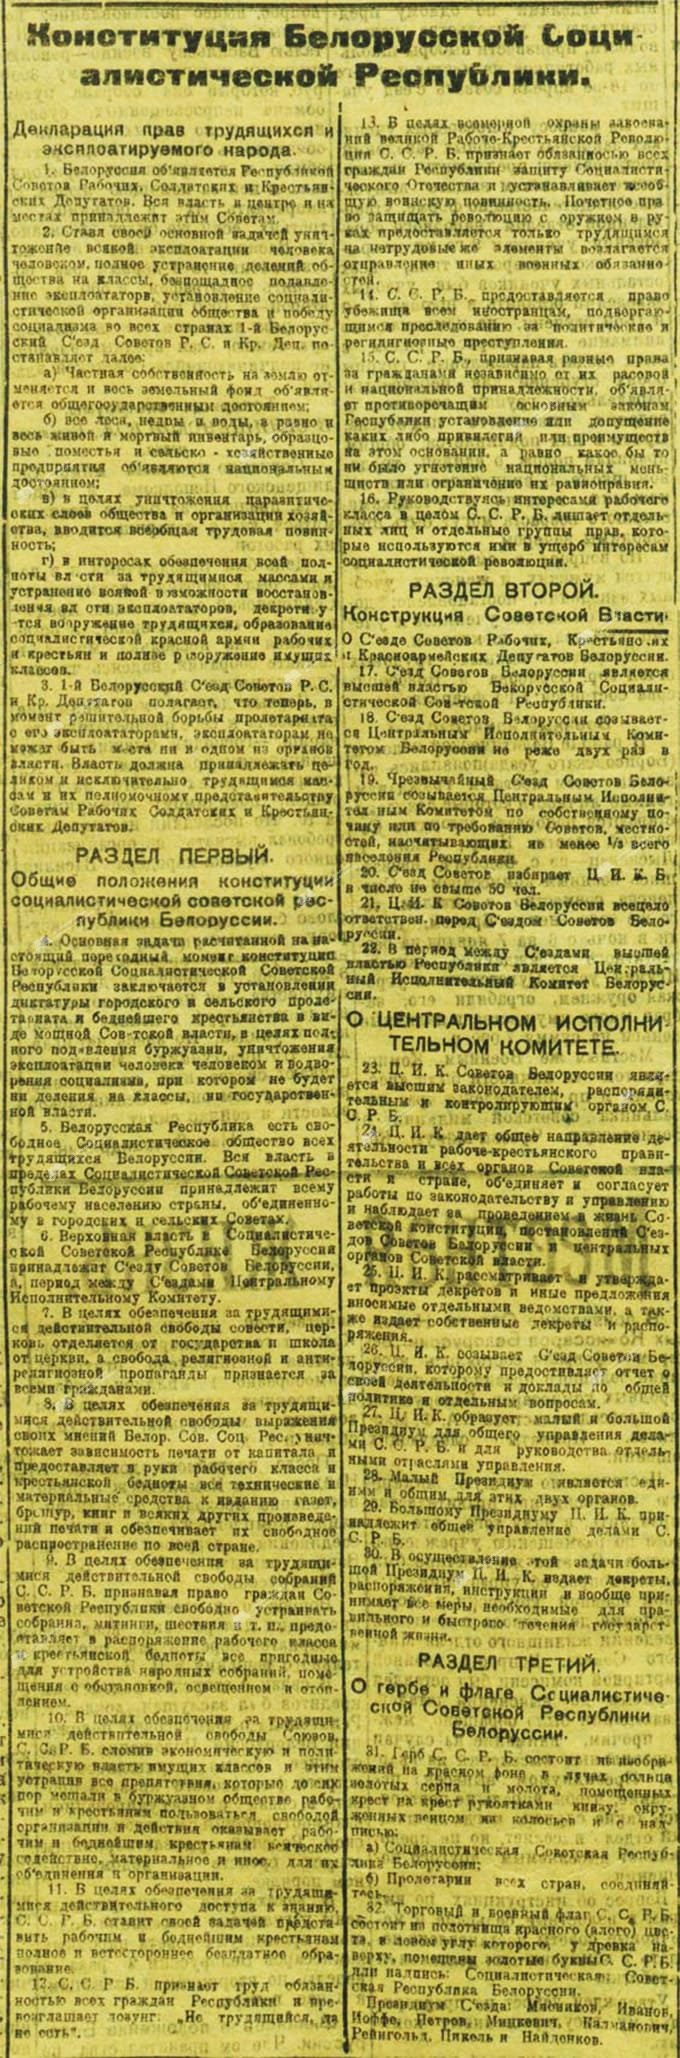 Канстытуцыя Беларускай Сацыялістычнай Рэспублікі (ССРБ) 3 лютага 1919 г.-с. 0